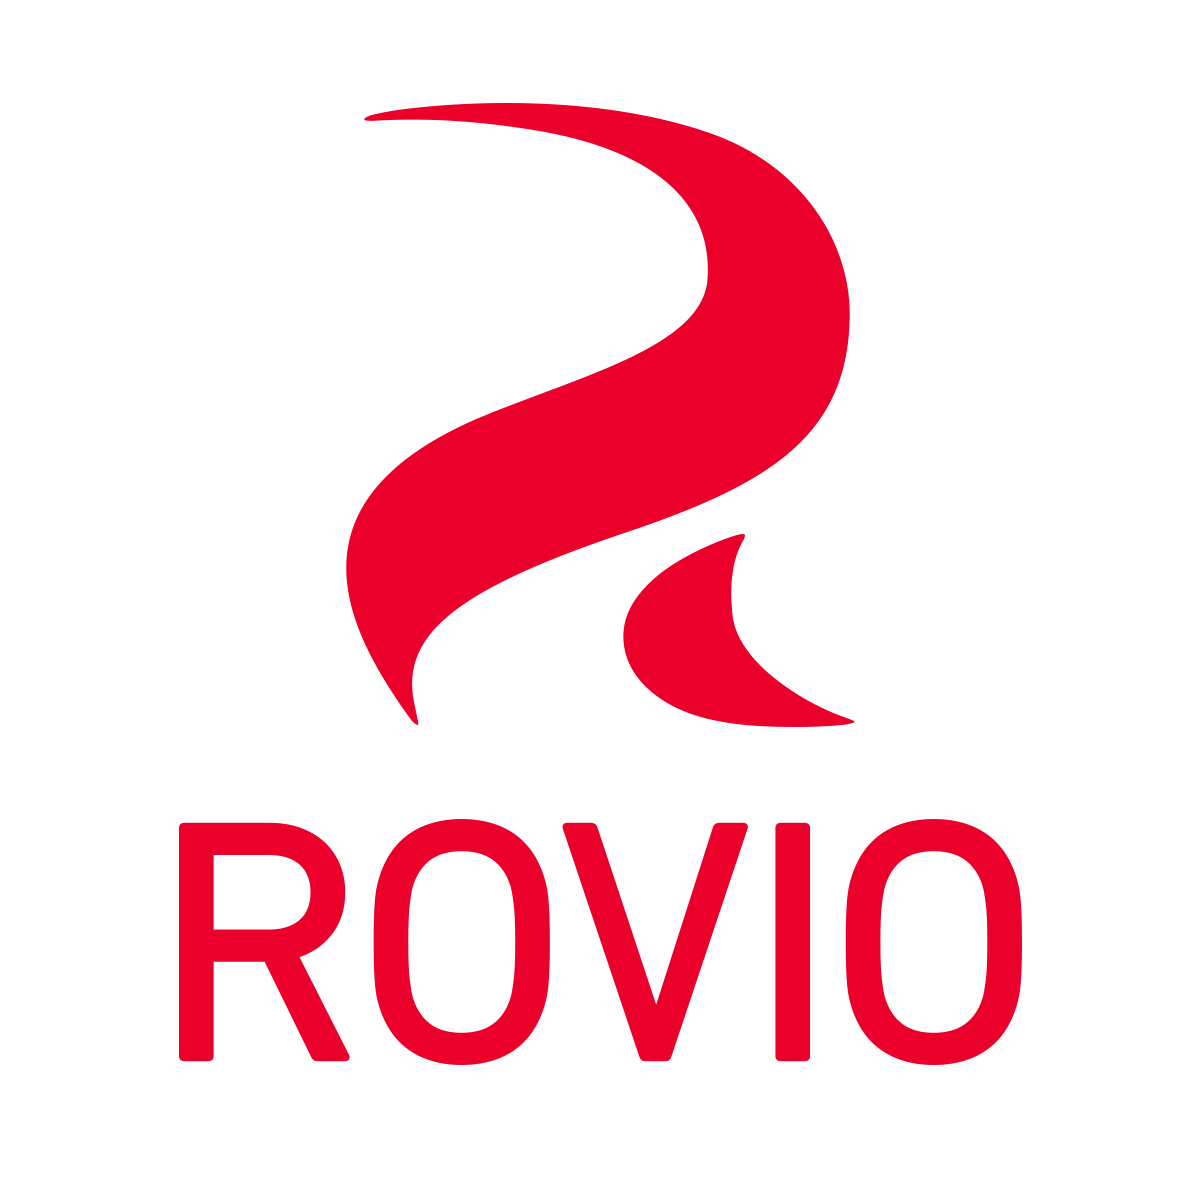 Link to external partner website rovio.com